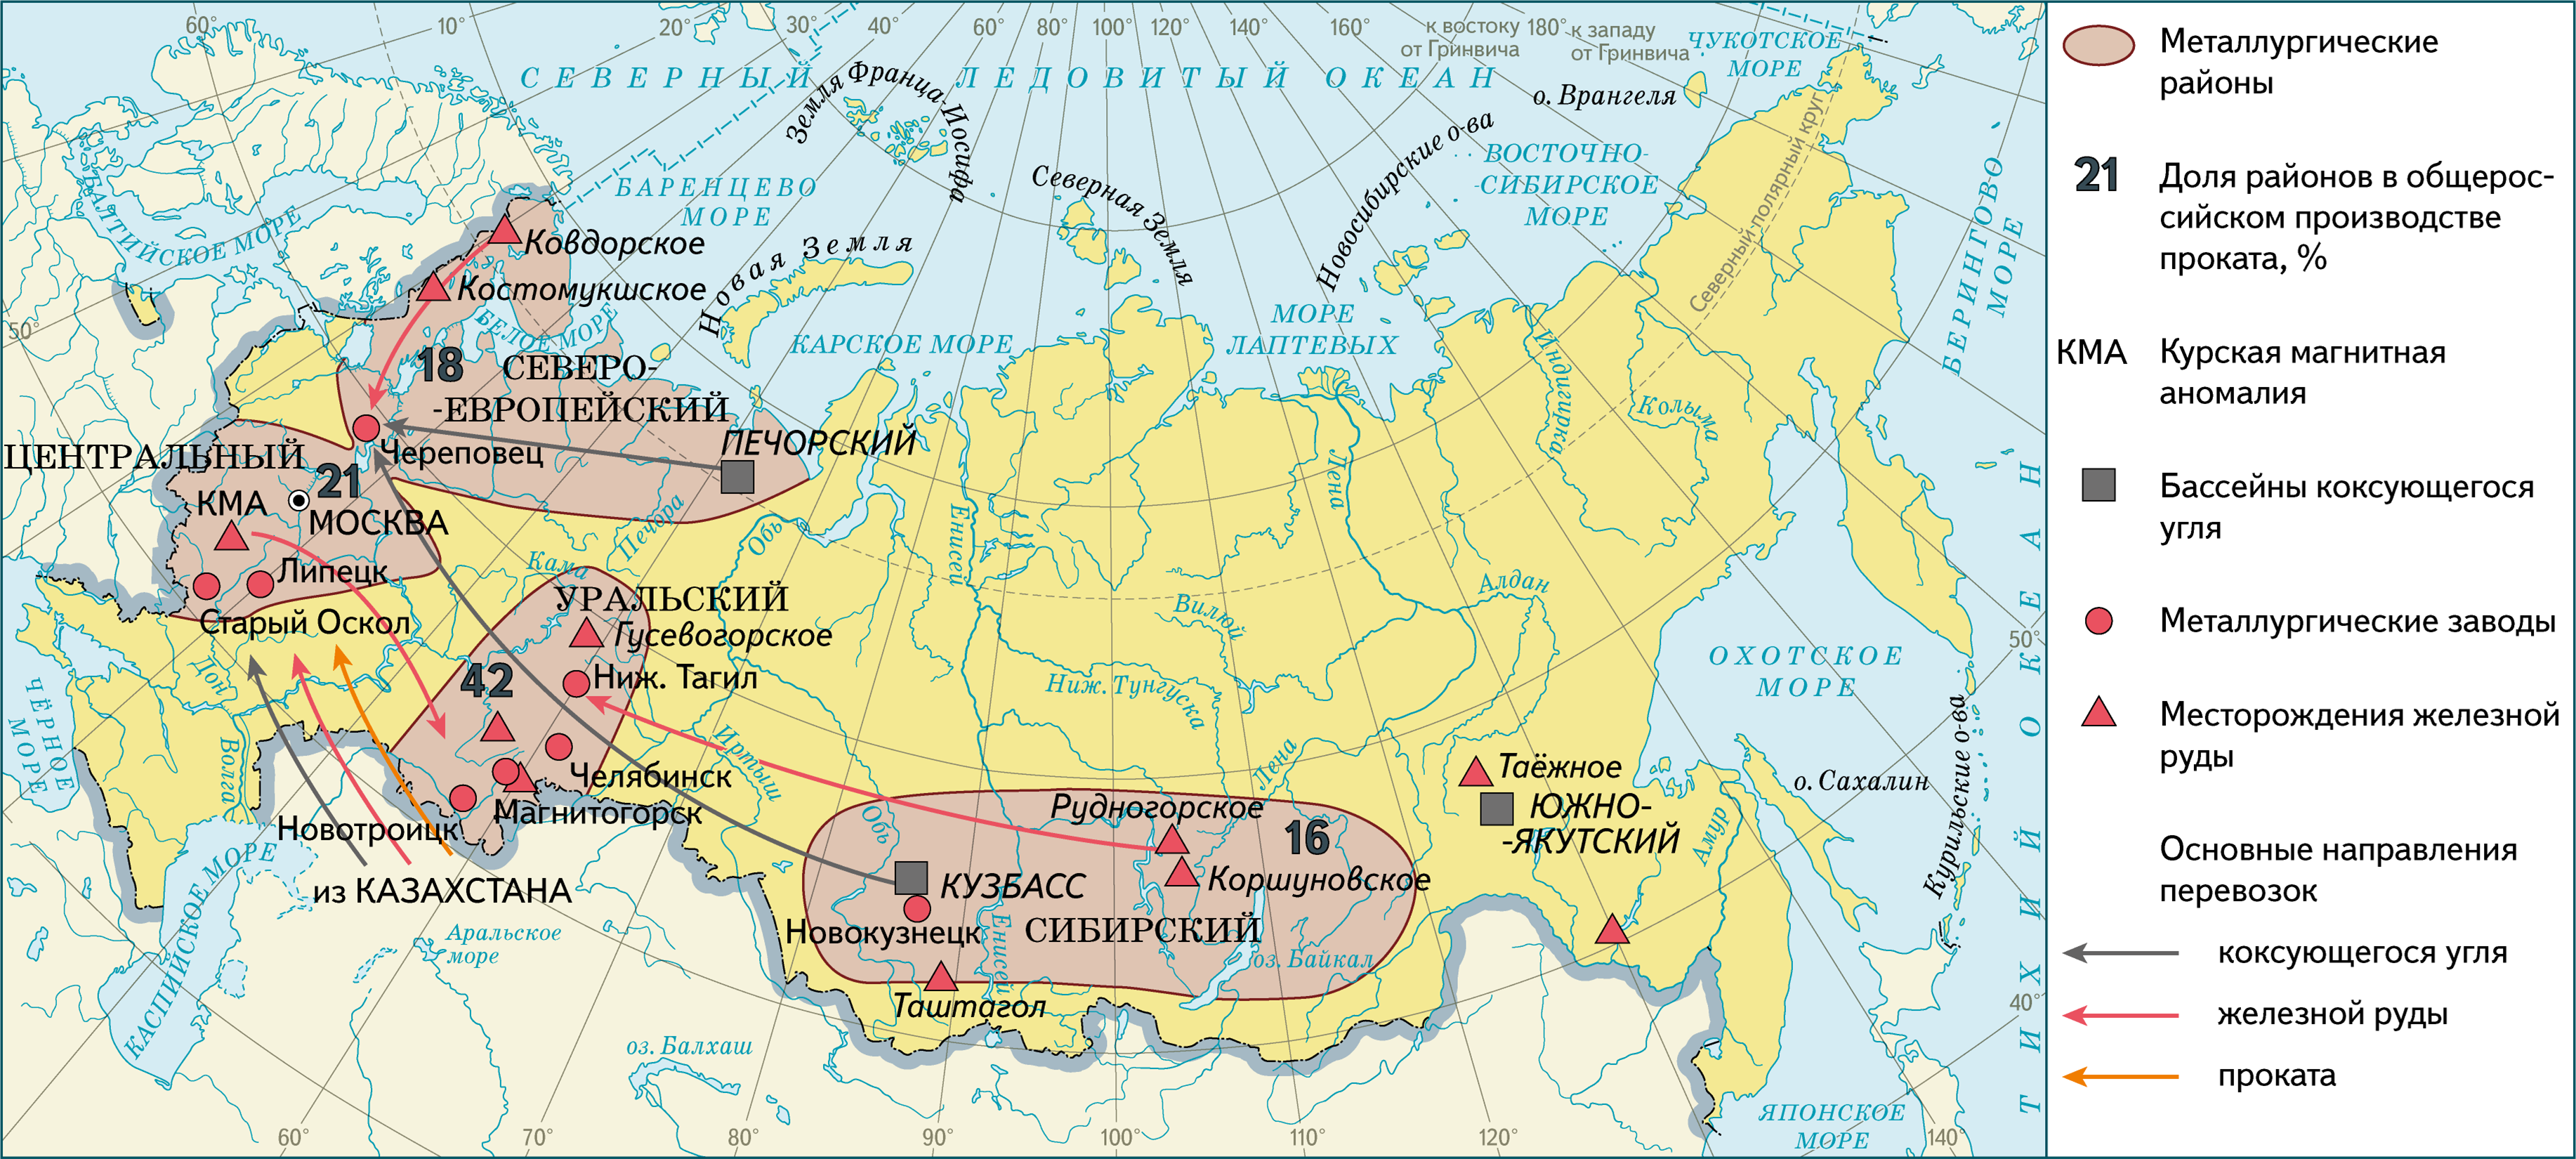 Месторождение железной руды КМА на карте. Железные руды КМА на карте России. КМА месторождение на карте. Месторождения железной руды в России на карте.